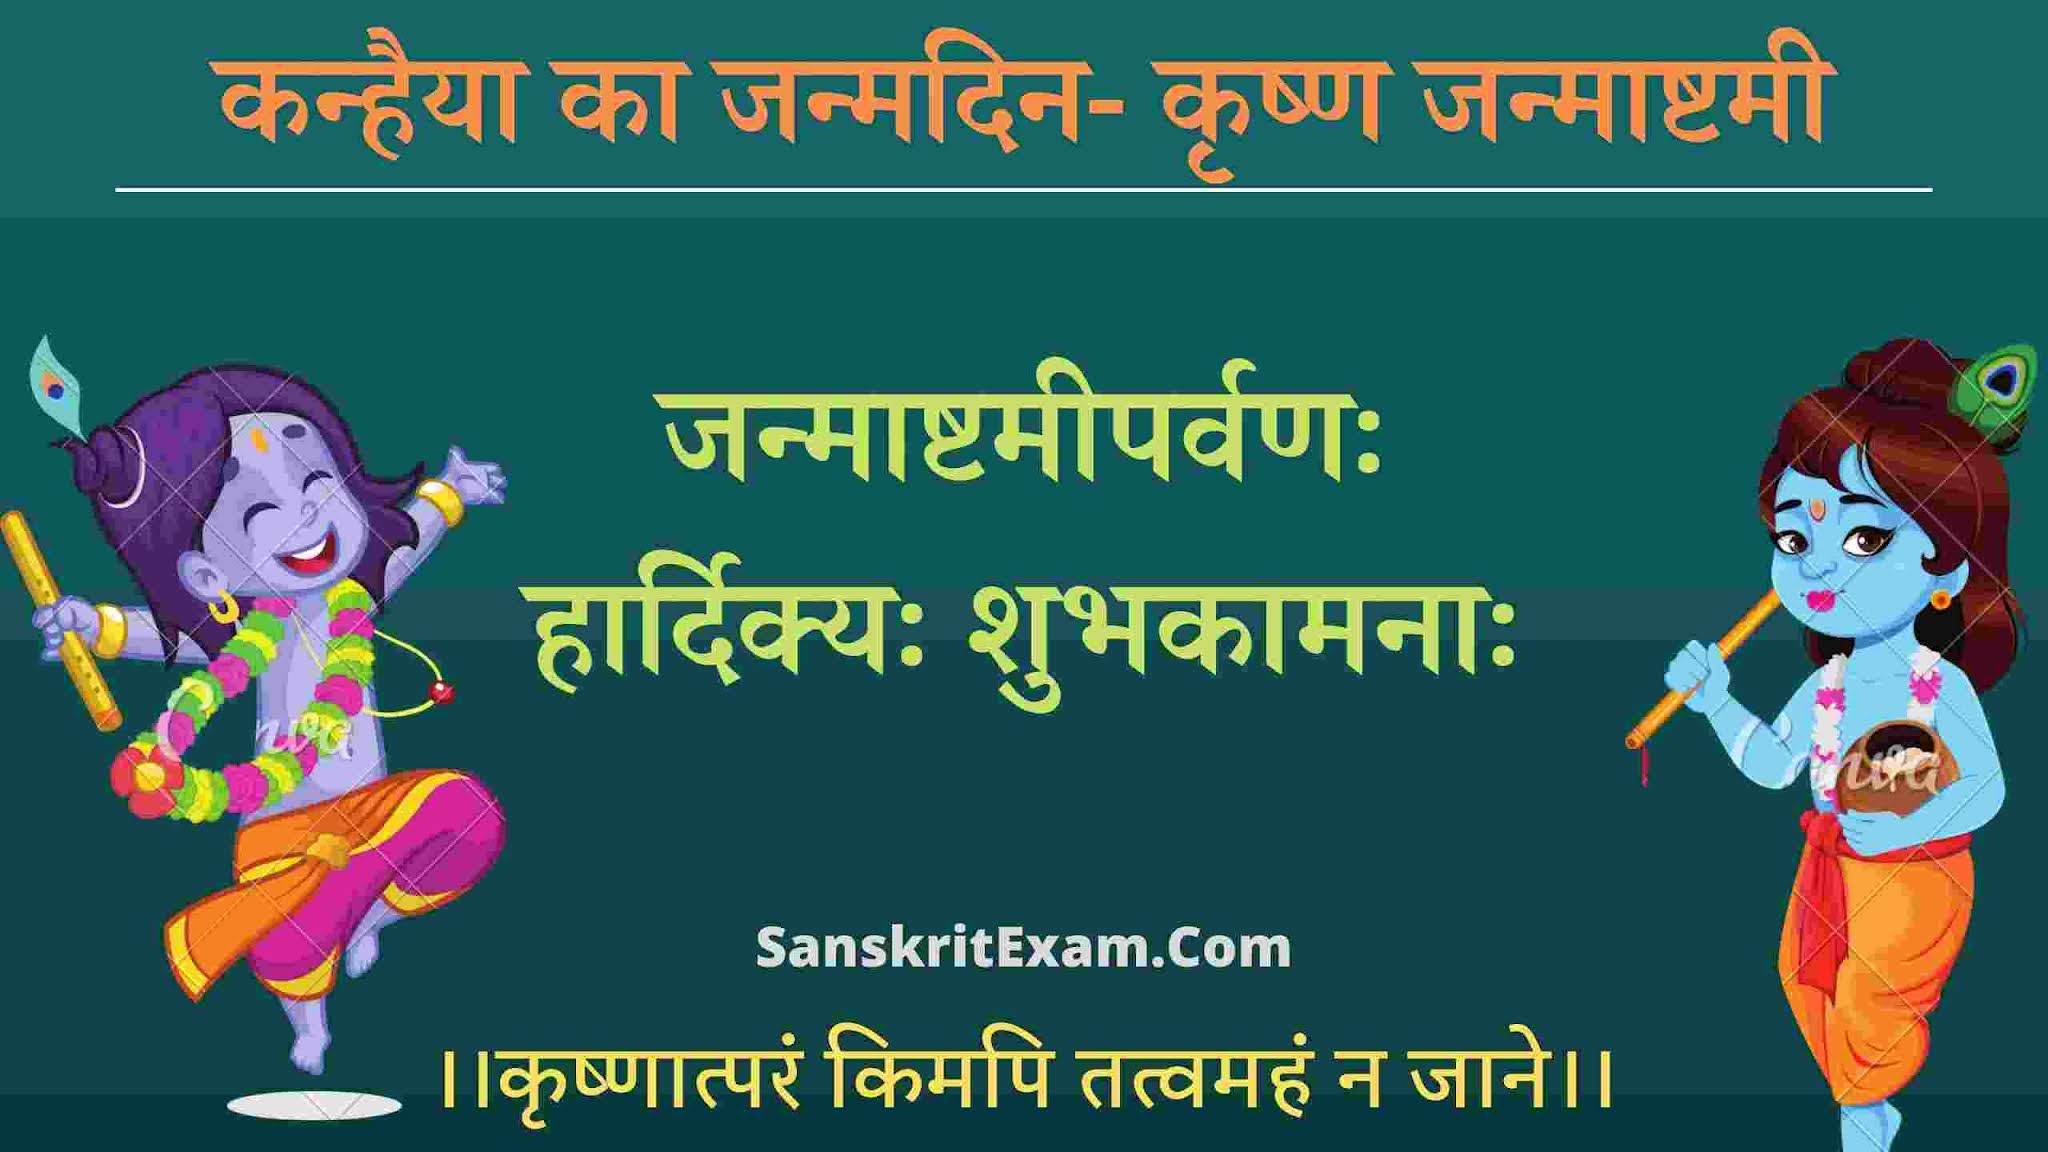 Happy Janmashtami In Hindi | Krishna Janmashtami Wishes In Sanskrit Images | जन्माष्टमी क्यों मनाई जाती है- महत्व, इतिहास, तिथि-मुहूर्त, उद्देश्य, शुभकामनाएँ